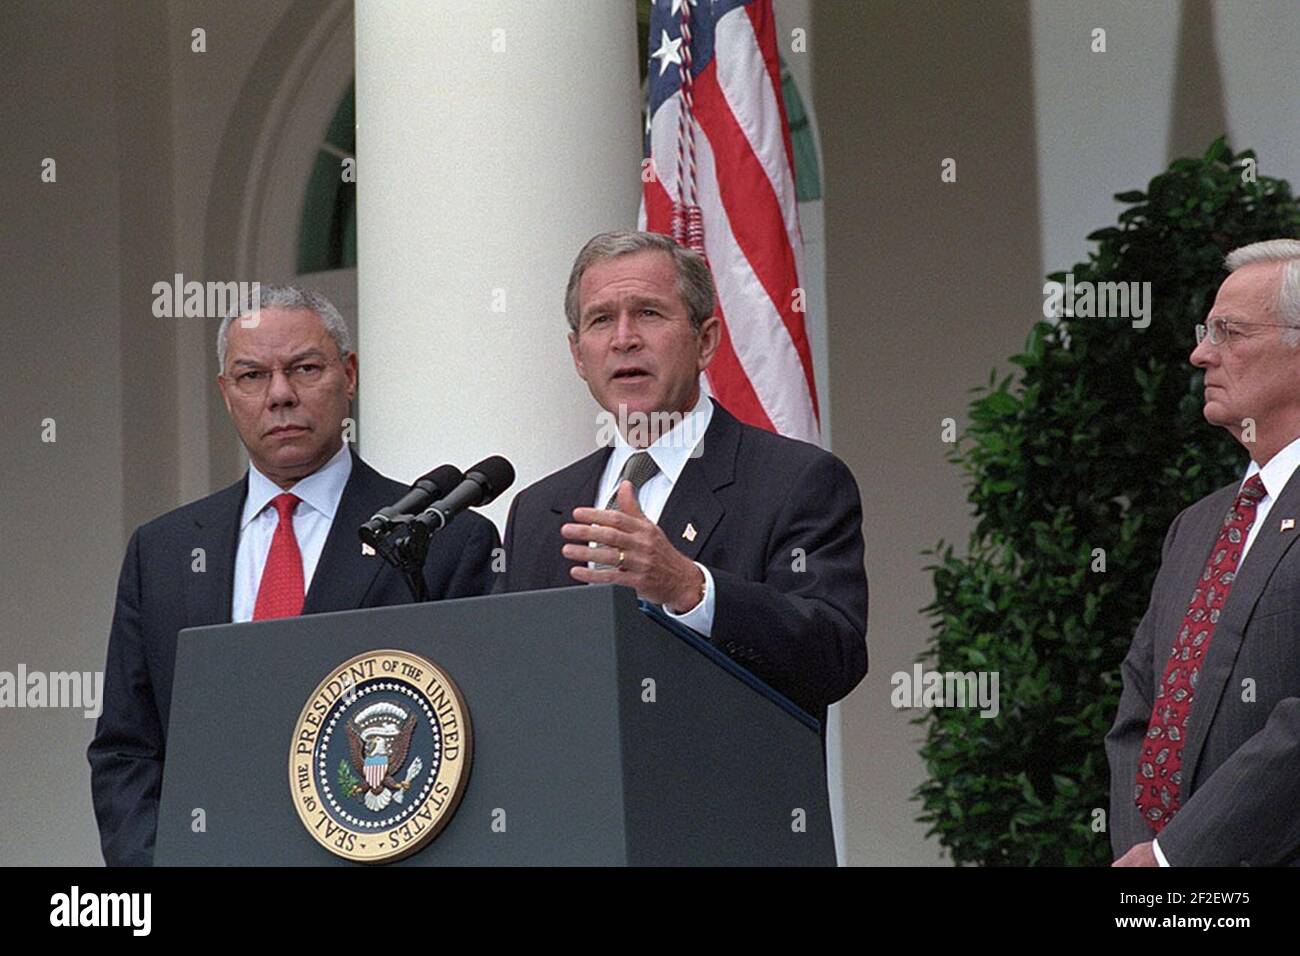 Le Président George W. Bush et le Secrétaire d'État Colin Powell Allocution de Rose Garden sur ordre exécutif. Banque D'Images